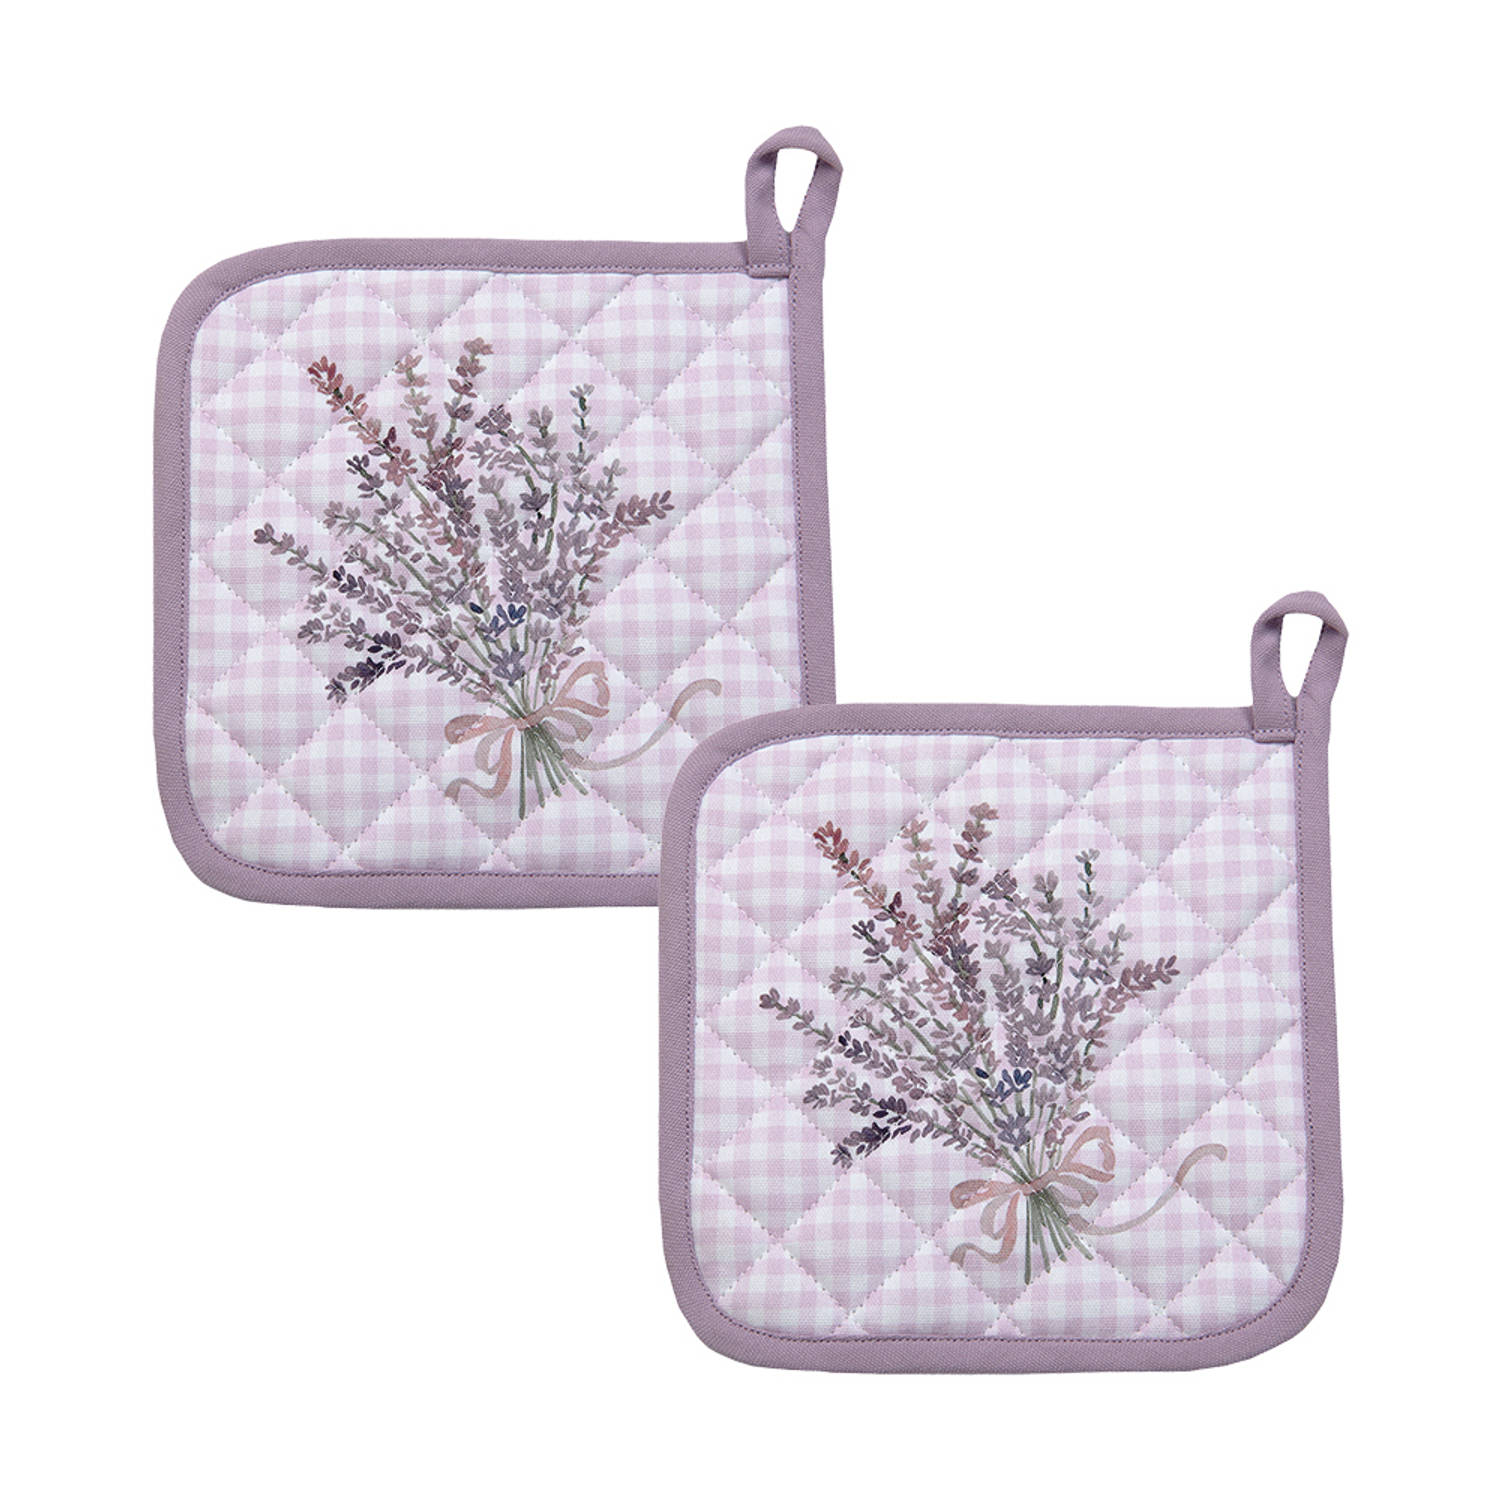 HAES DECO - Set van 2 Pannenlappen - formaat 20x20 cm - kleuren Paars / Wit - van 100% Katoen - Collectie: Lavender Garden - Pannenlap